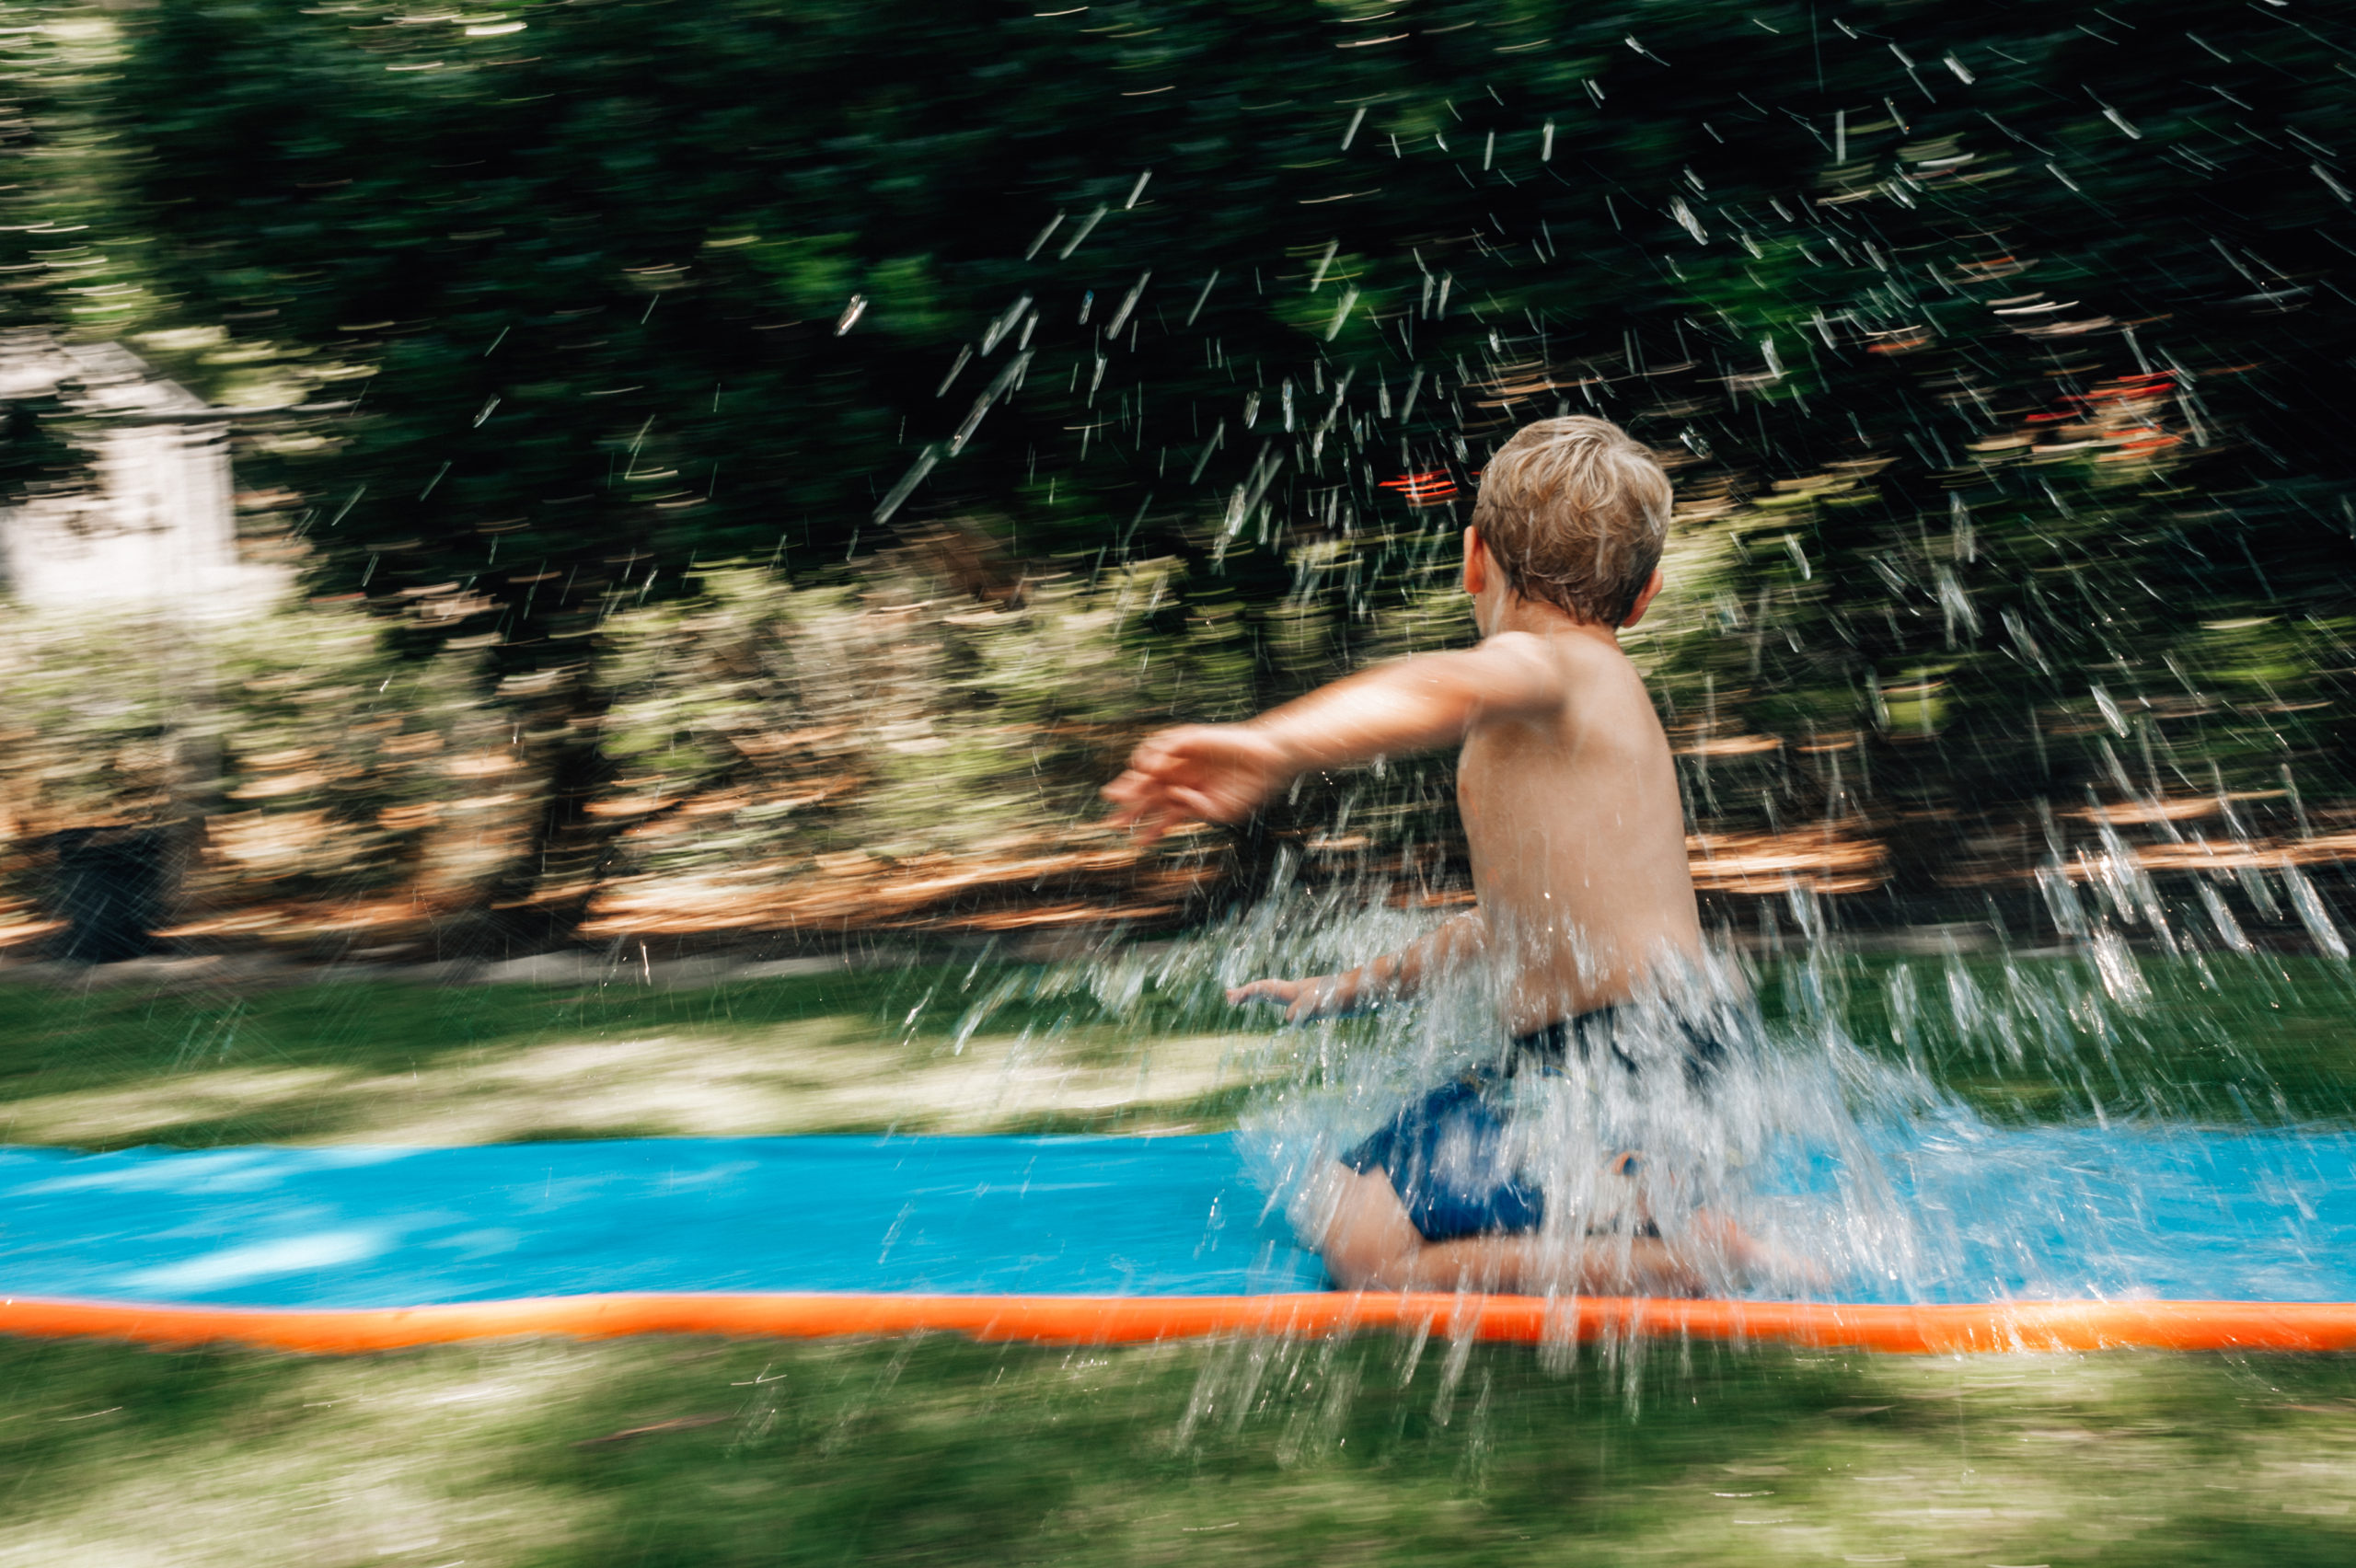 Boy enjoys slip in slide during williamsburg family session.